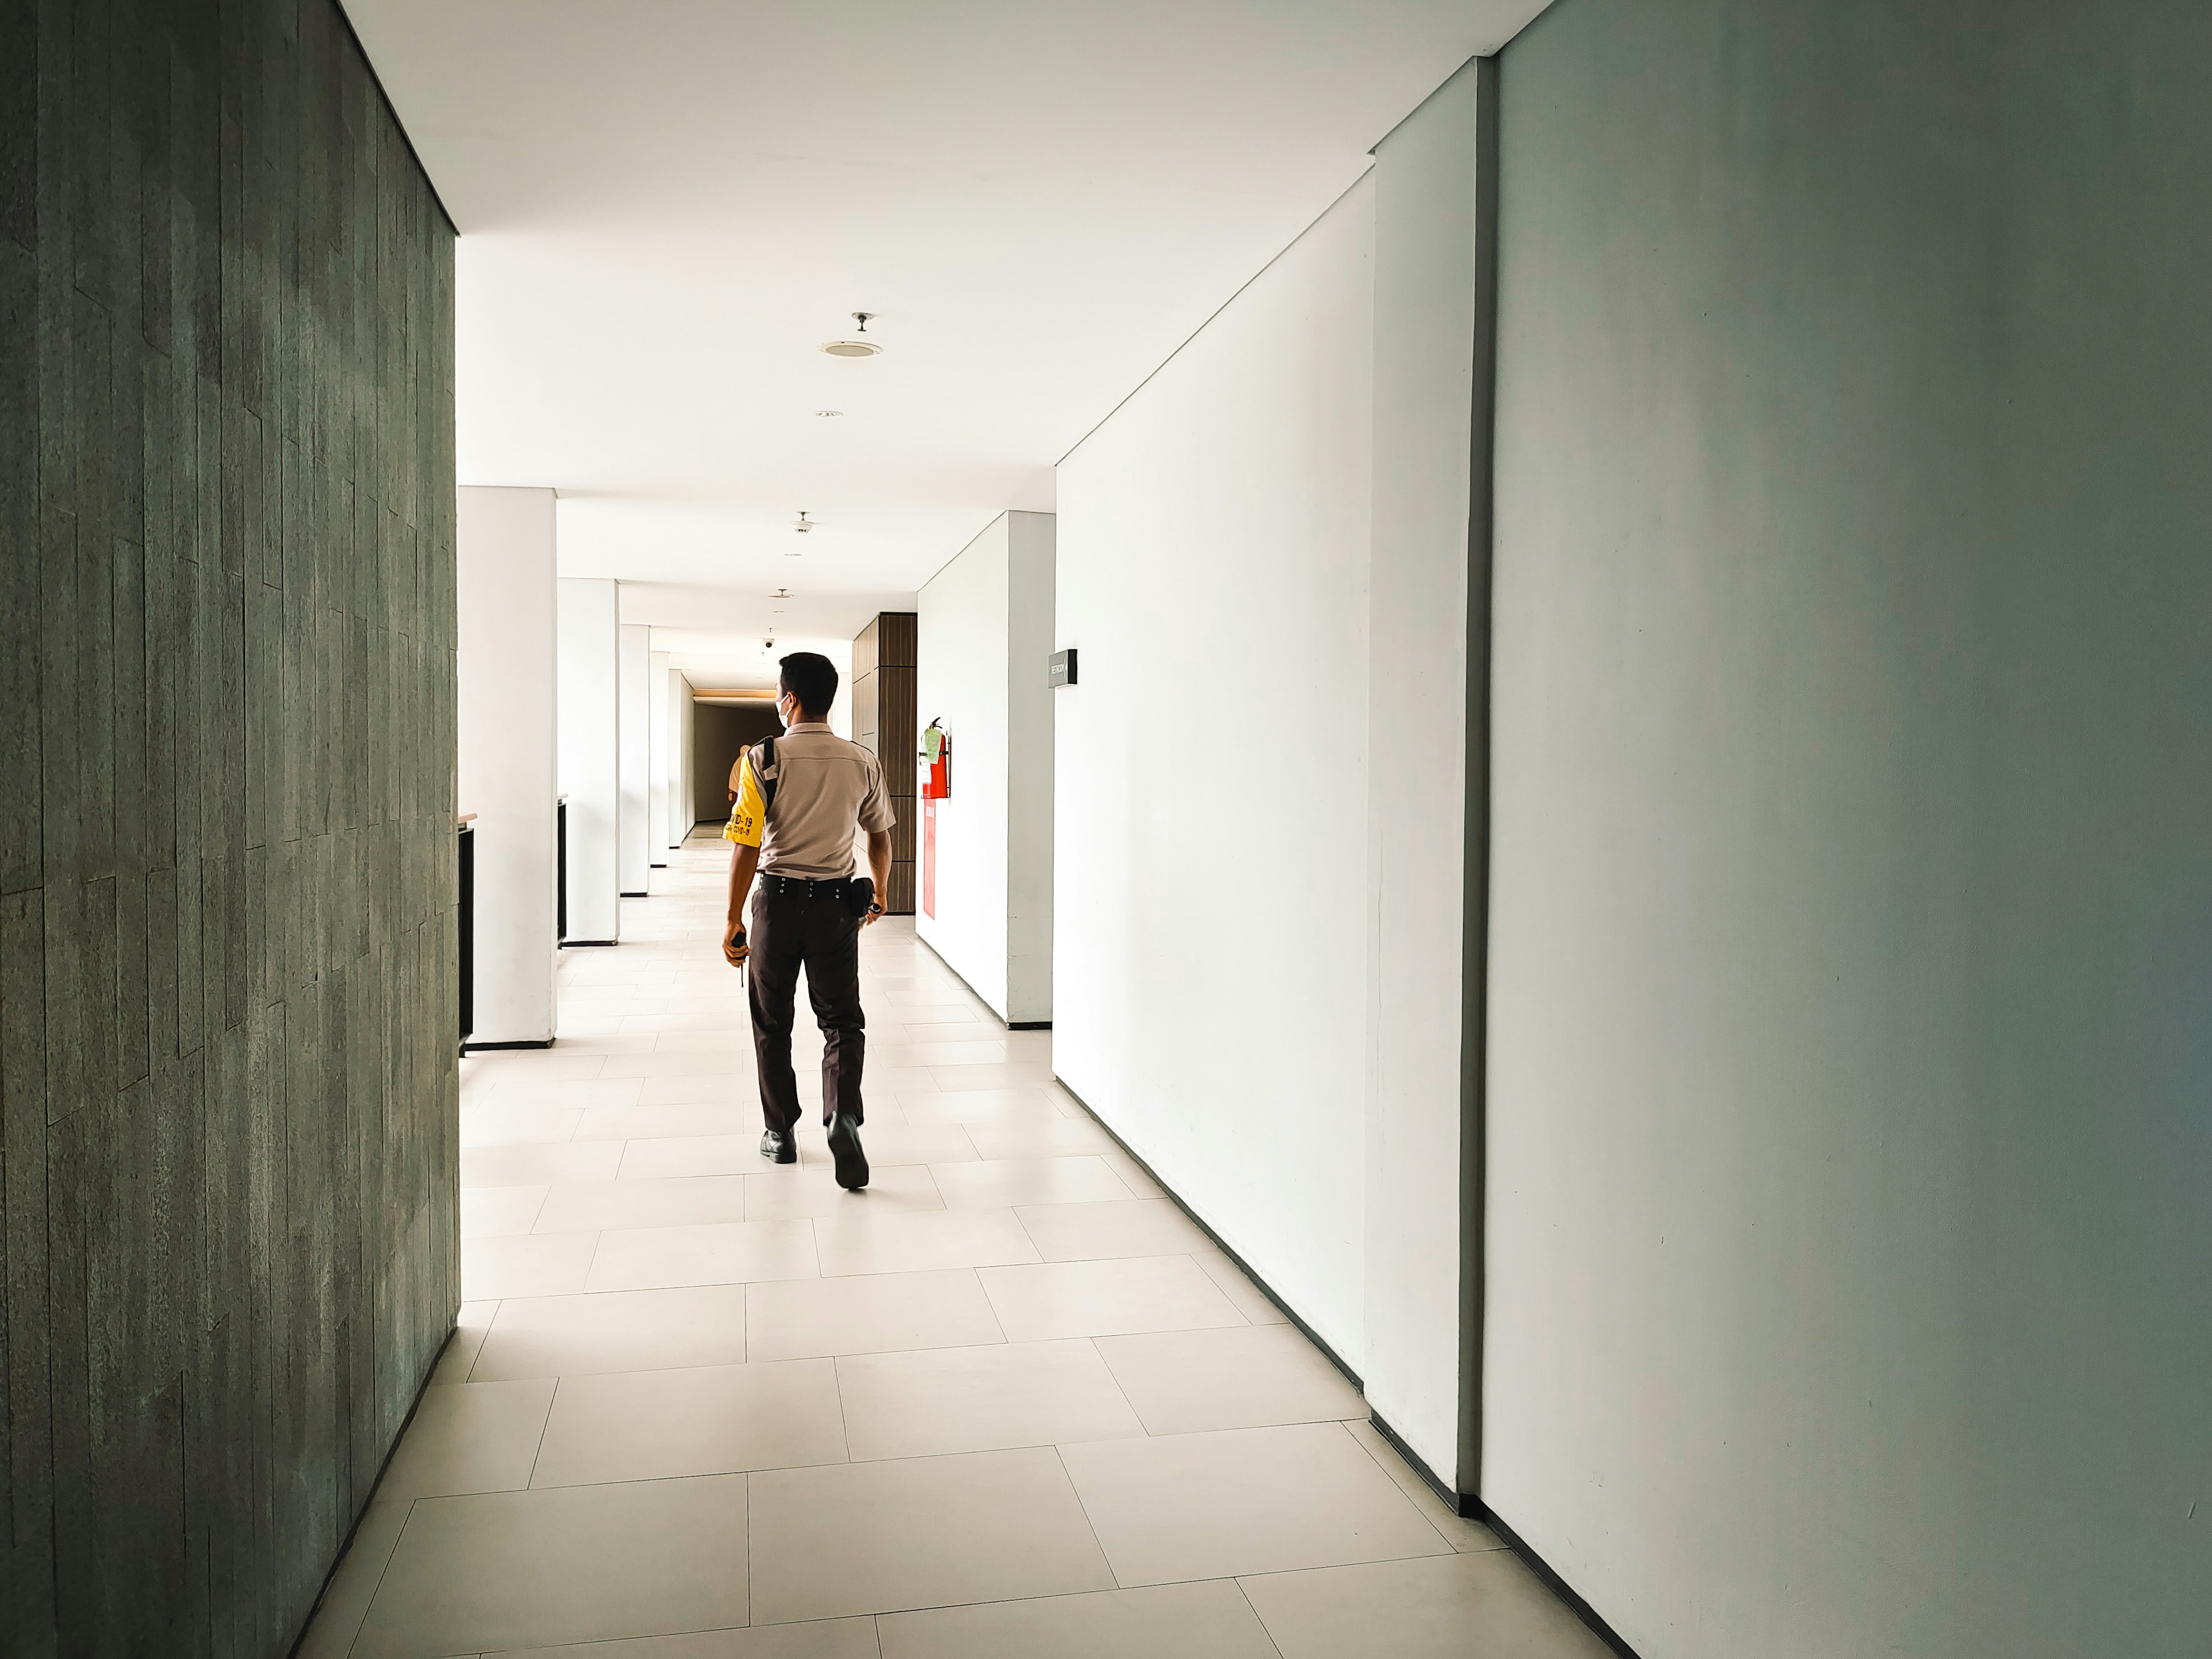 Ein Wachmann, der durch einen Korridor geht | Quelle: Pexels